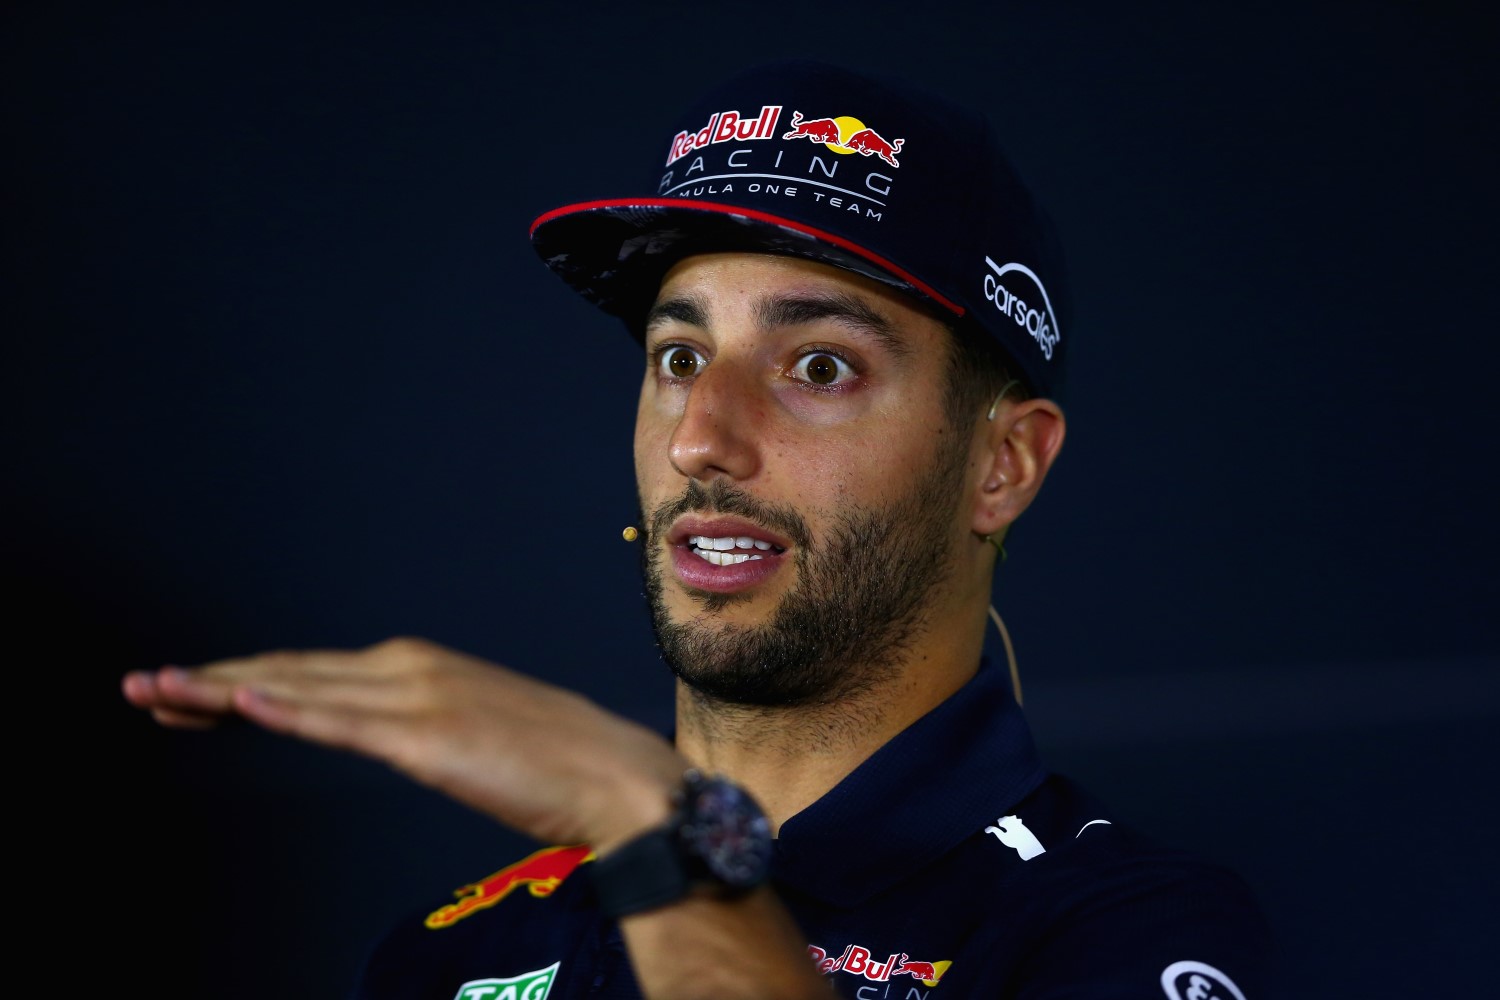 Ricciardo's right-rear brake caught fire